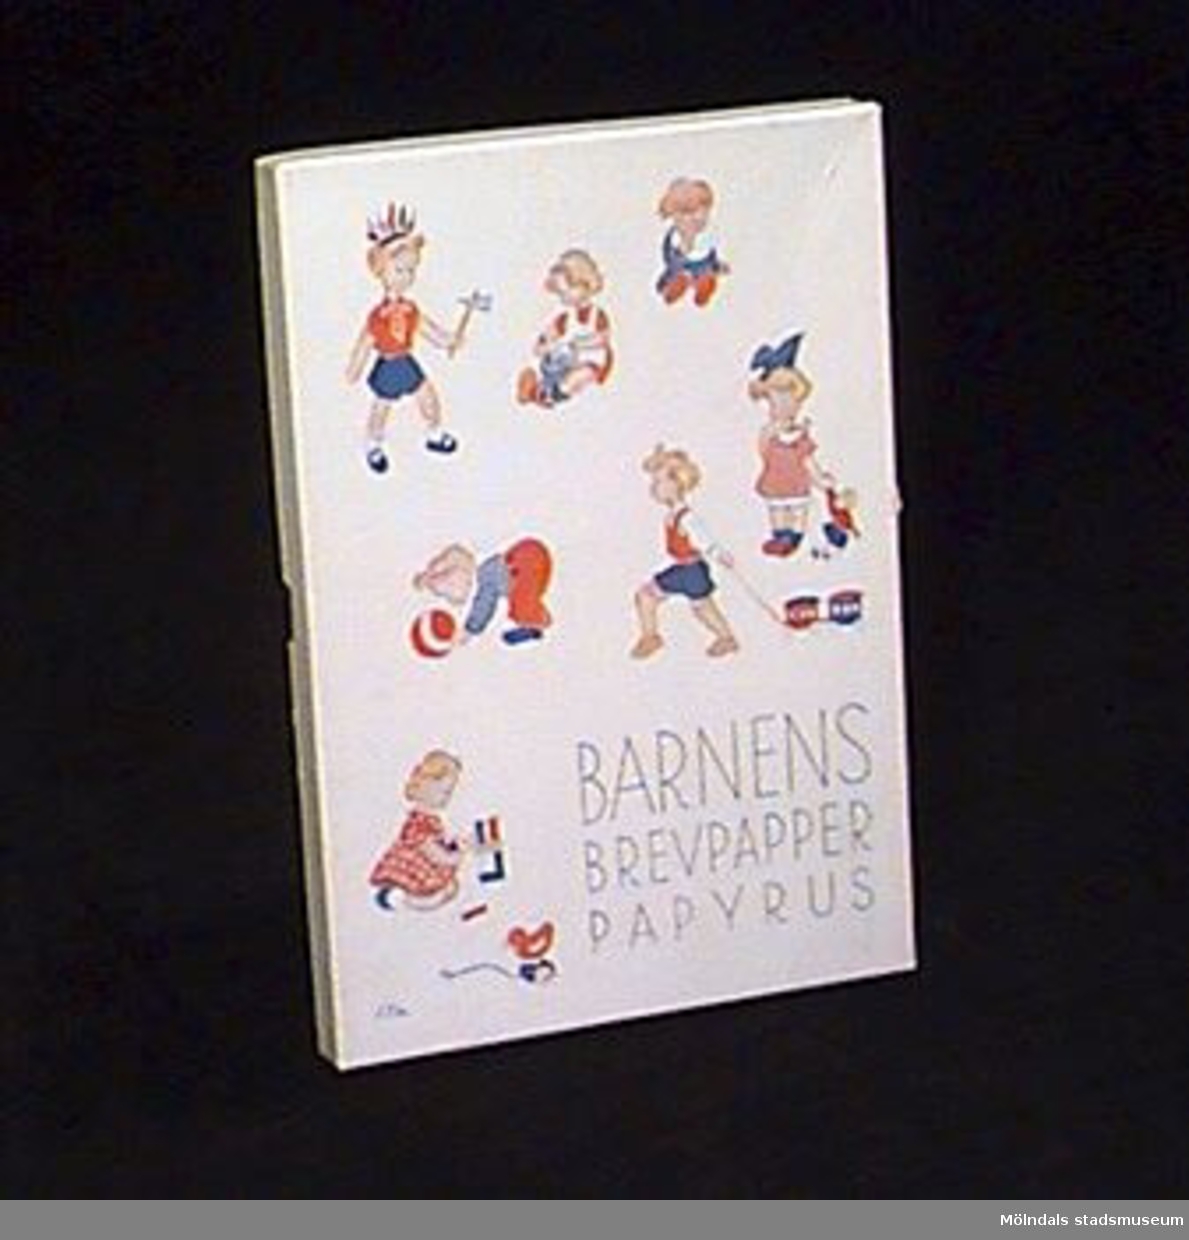 Vit ask med lock. Locket är illustrerat med lekande barn. Blå tryckt text: "Barnens brevpapper", "Papyrus".